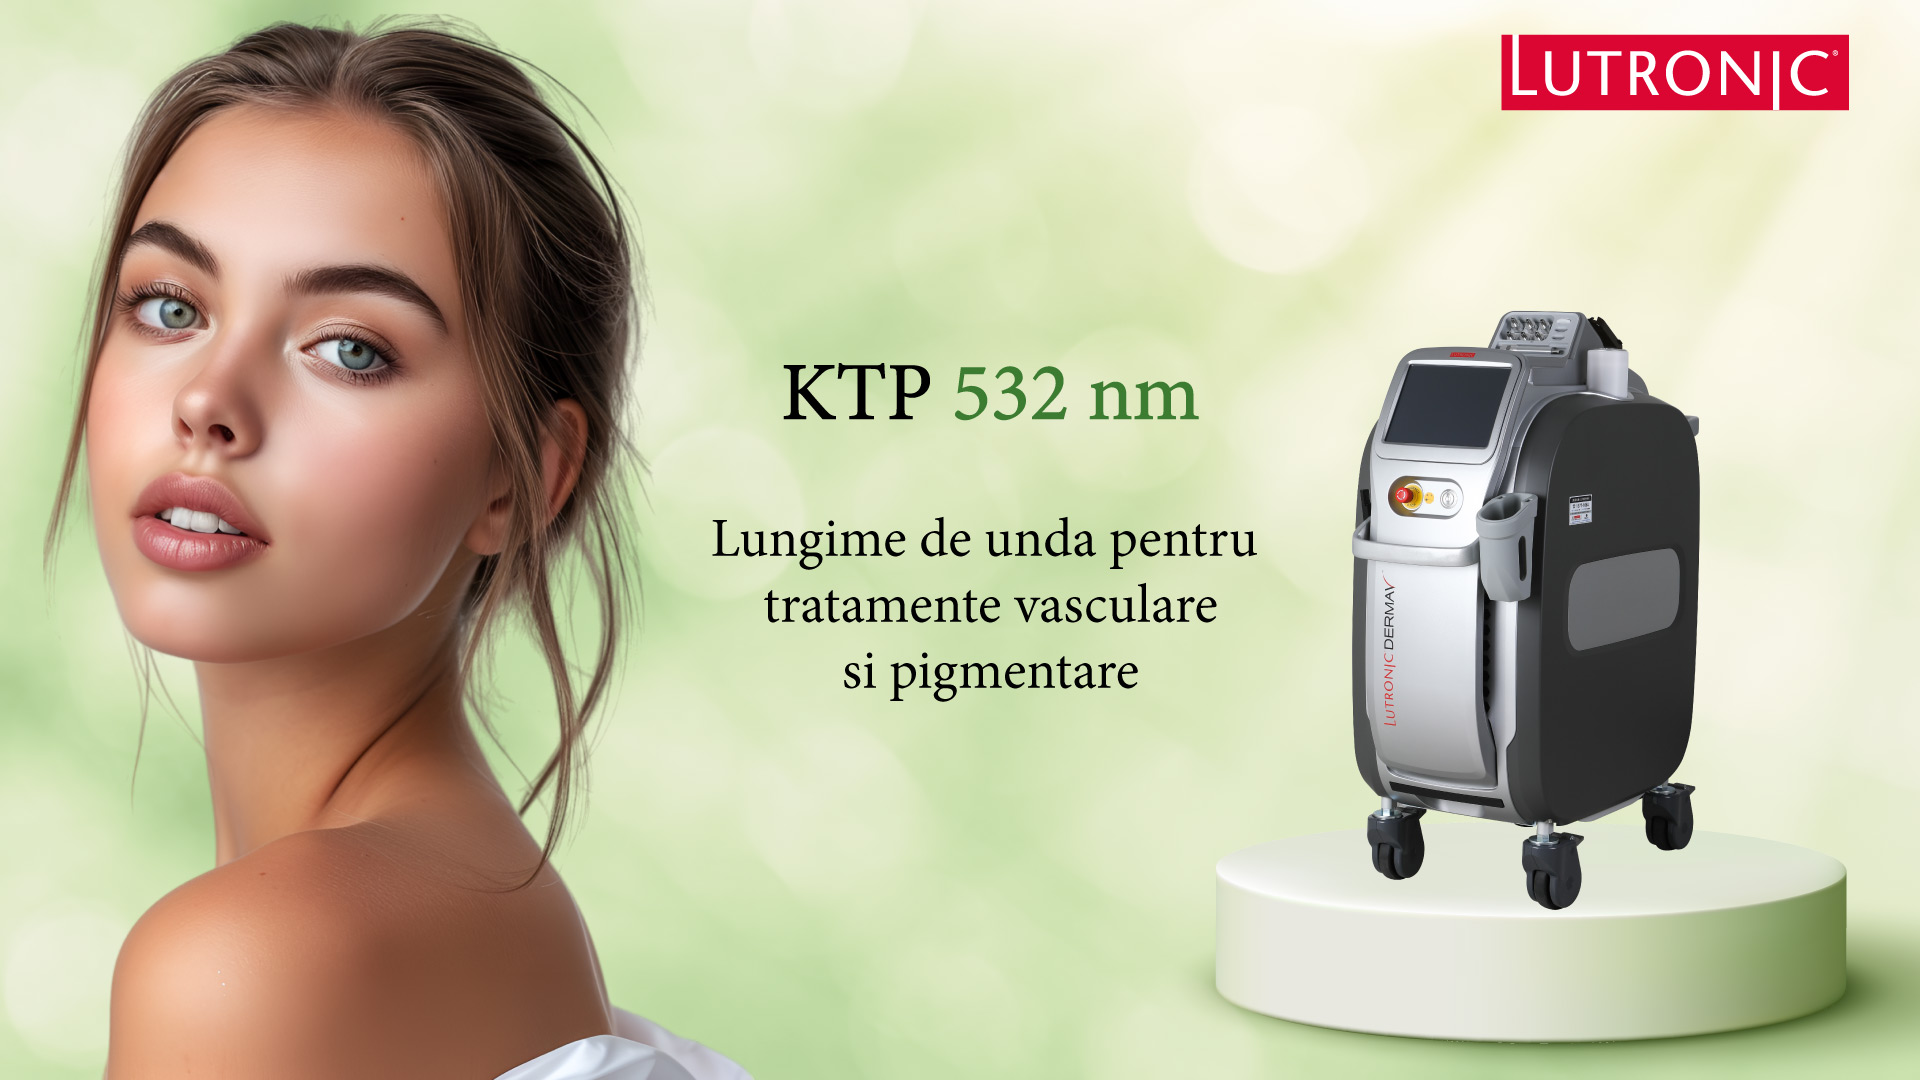 Laserul KTP are o lungime de unde de 532 nm si este potrivit pentru tartamentele vasculare si pigmentare